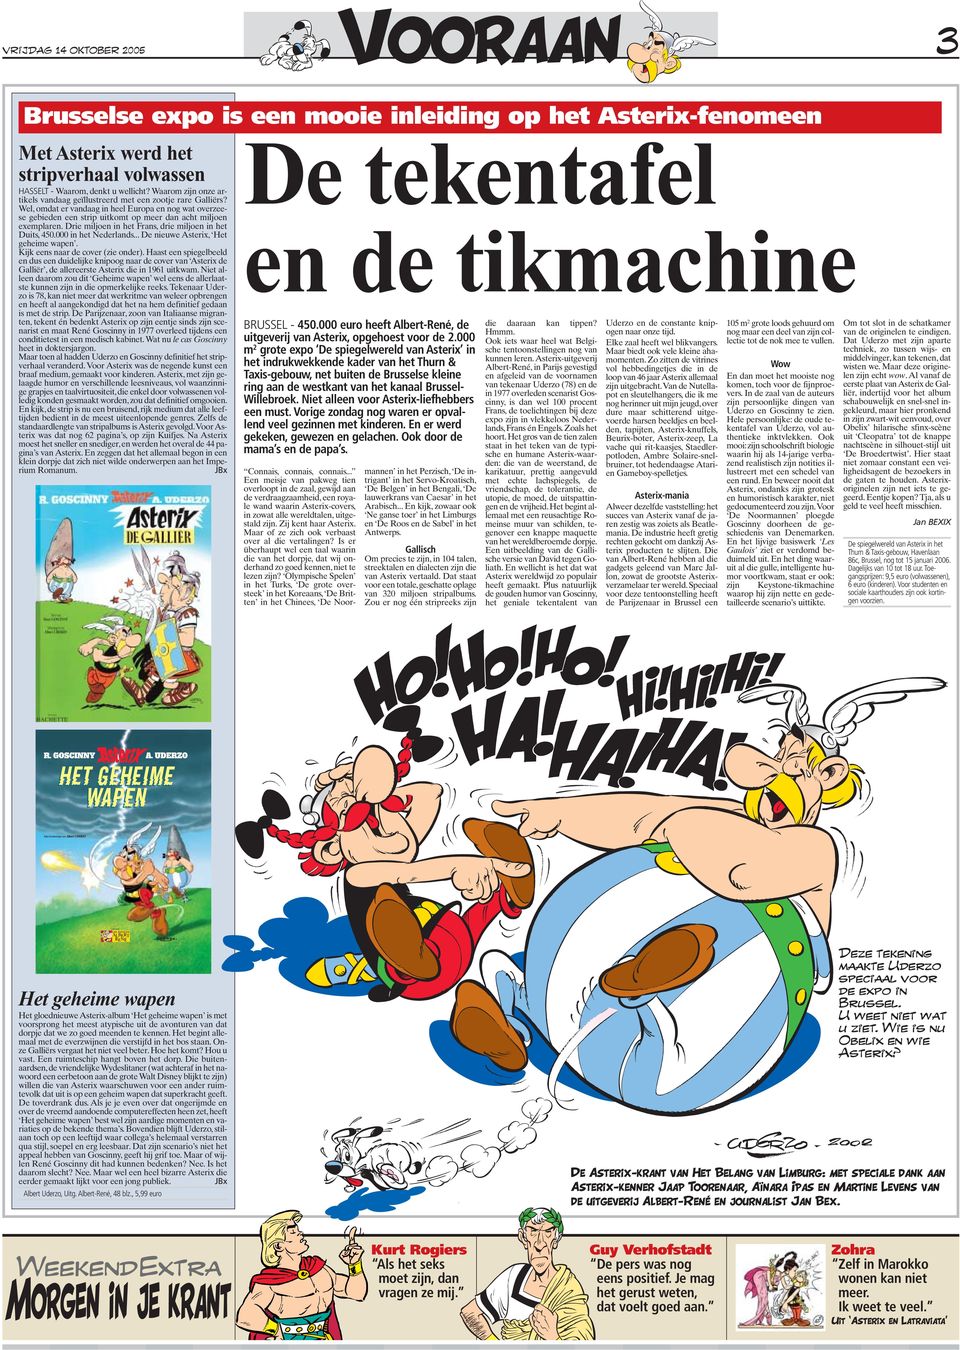 Drie miljoen in het Frans, drie miljoen in het Duits, 450.000 in het Nederlands... De nieuwe Asterix, Het geheime wapen. Kijk eens naar de cover (zie onder).